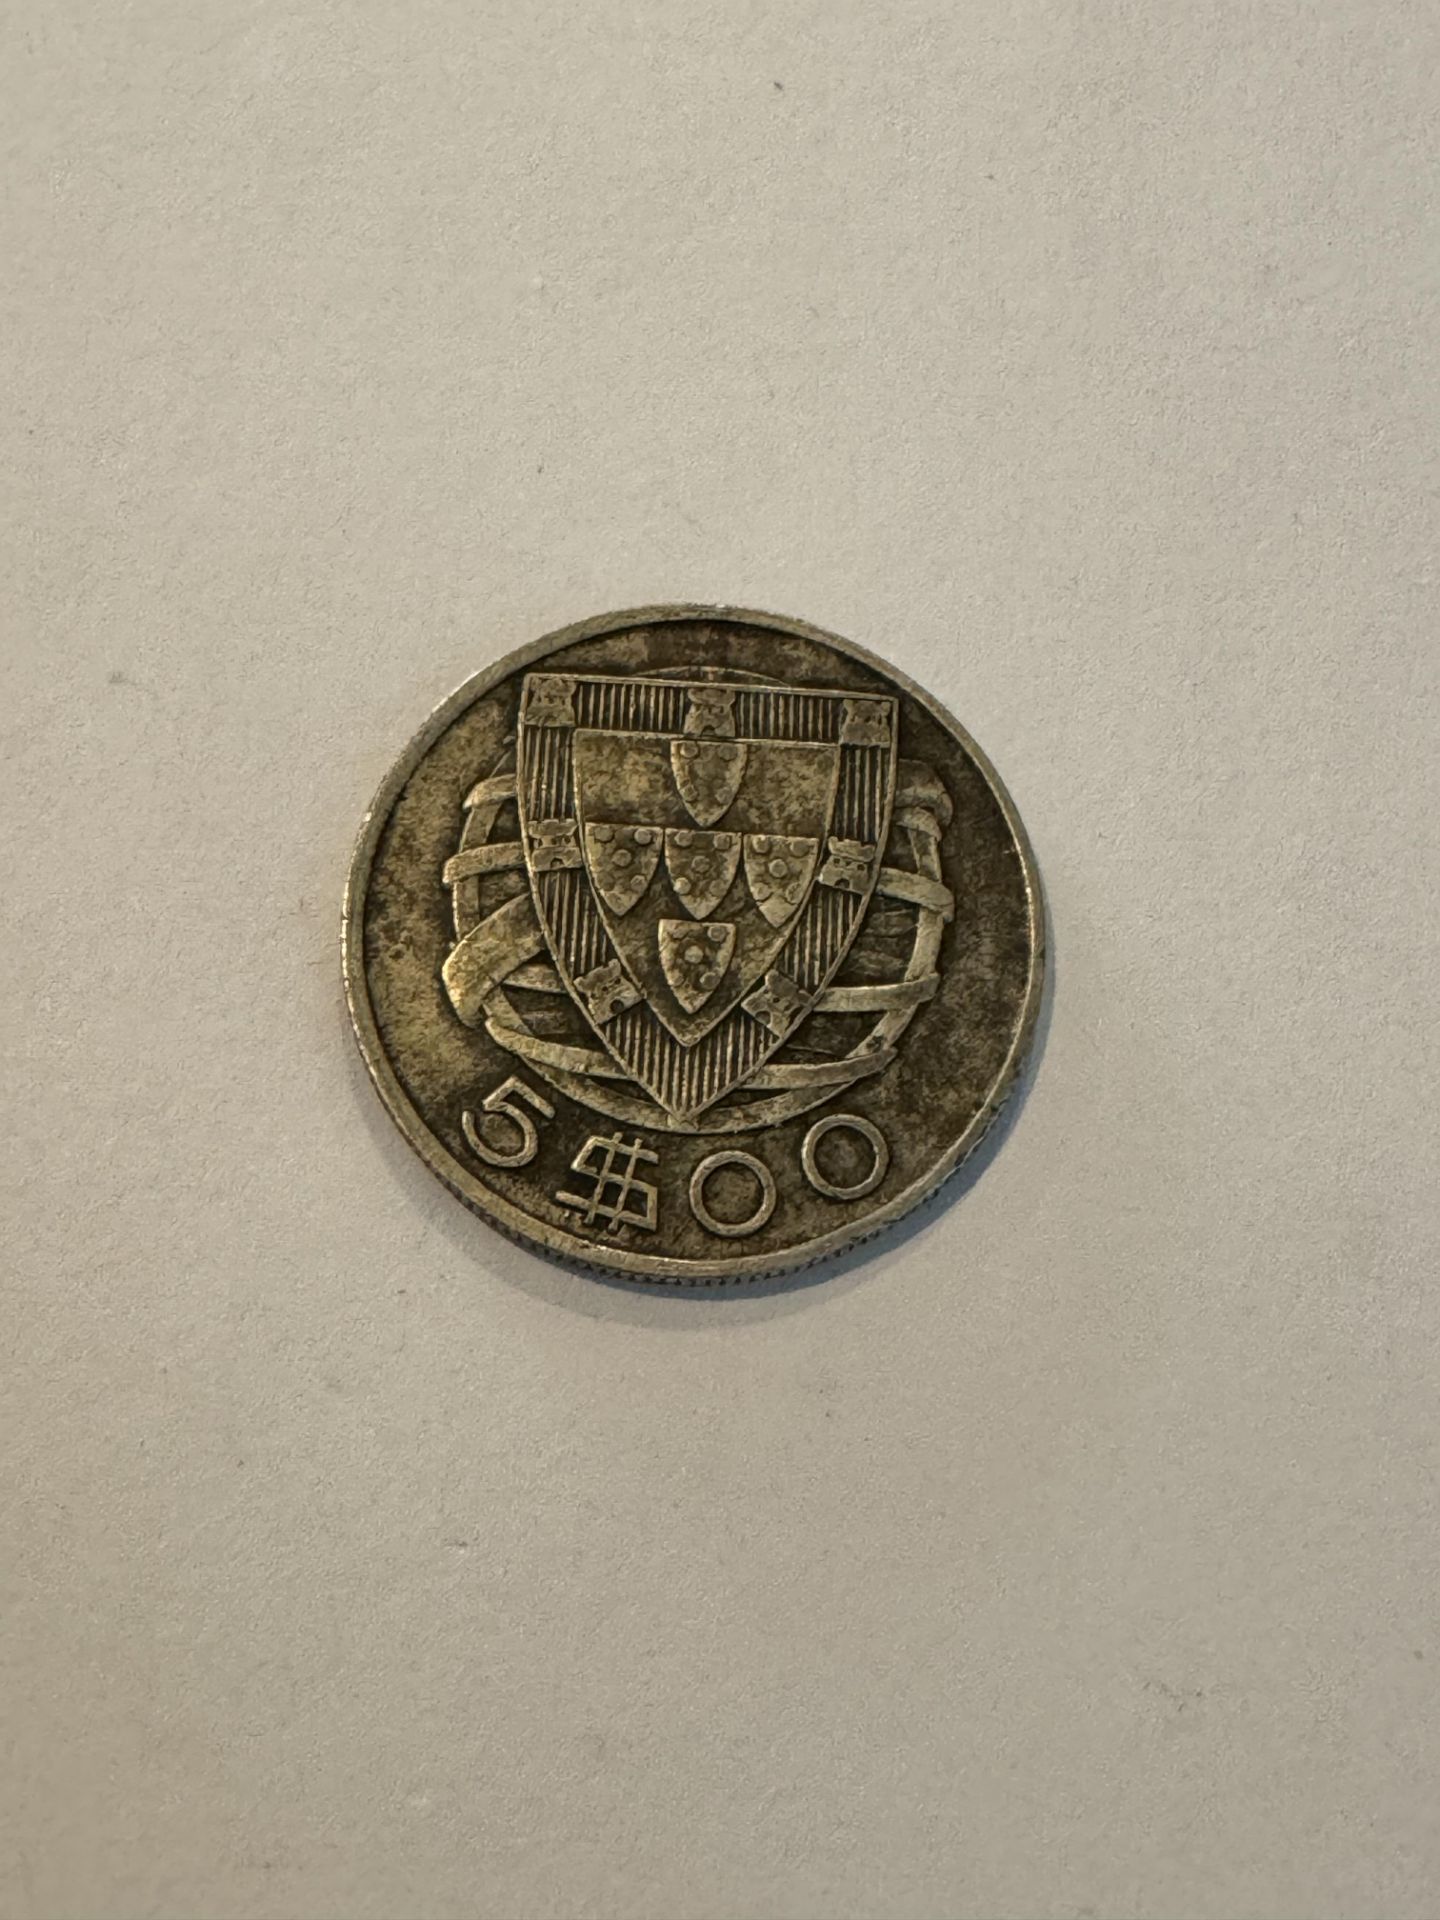 REPUBLICA PORTUGUESA 1934 SILVER COIN 5$00 - Image 2 of 2